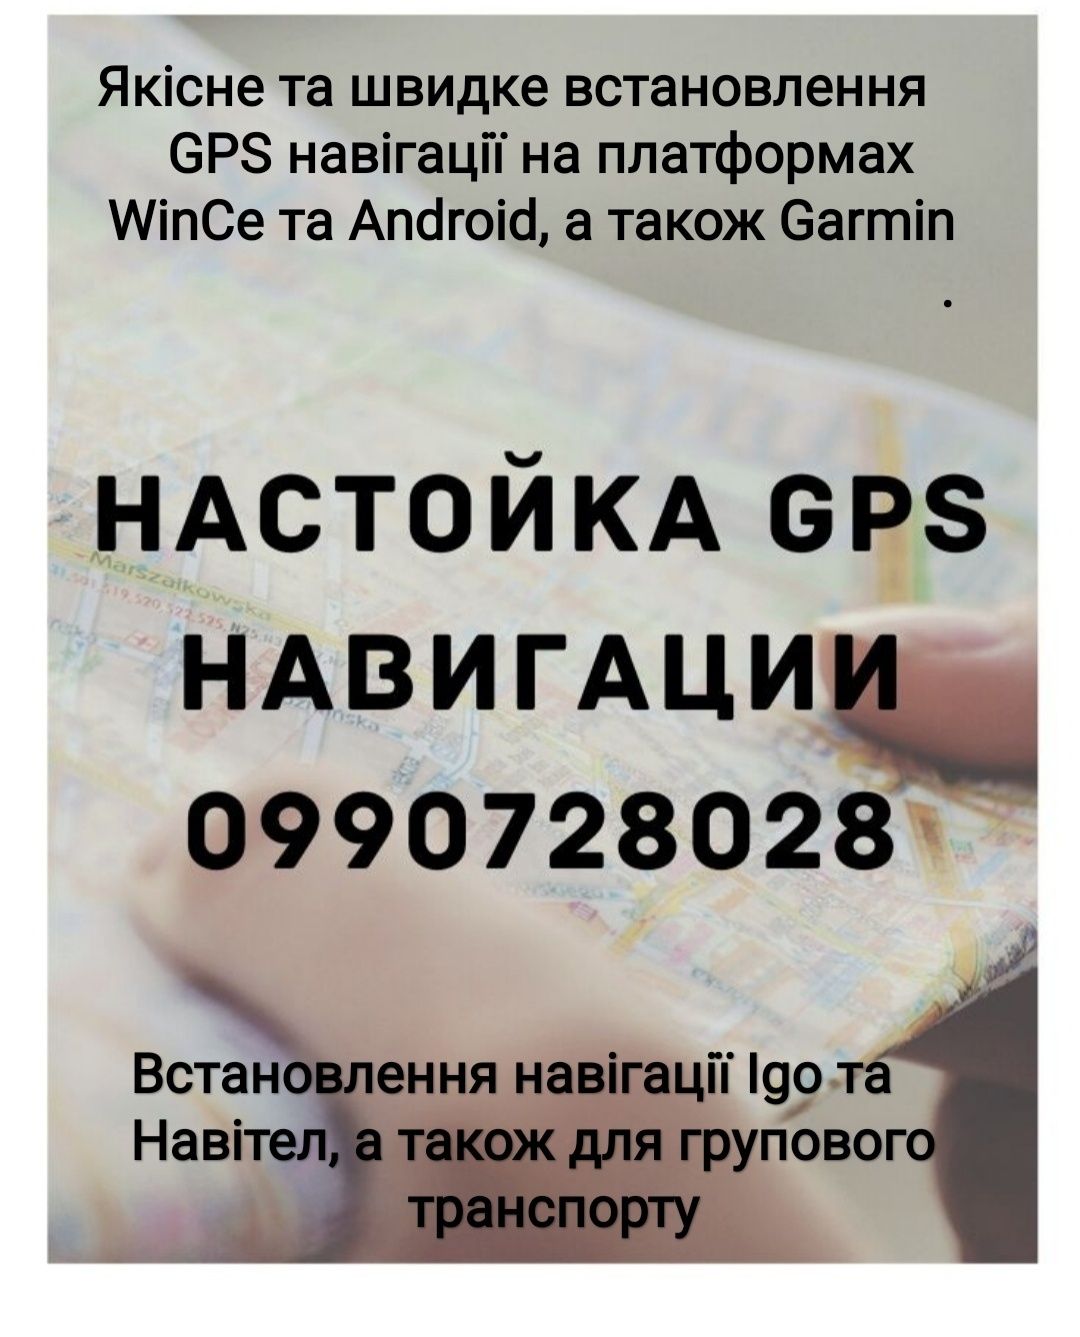 GPS навігація якісно та недогоро